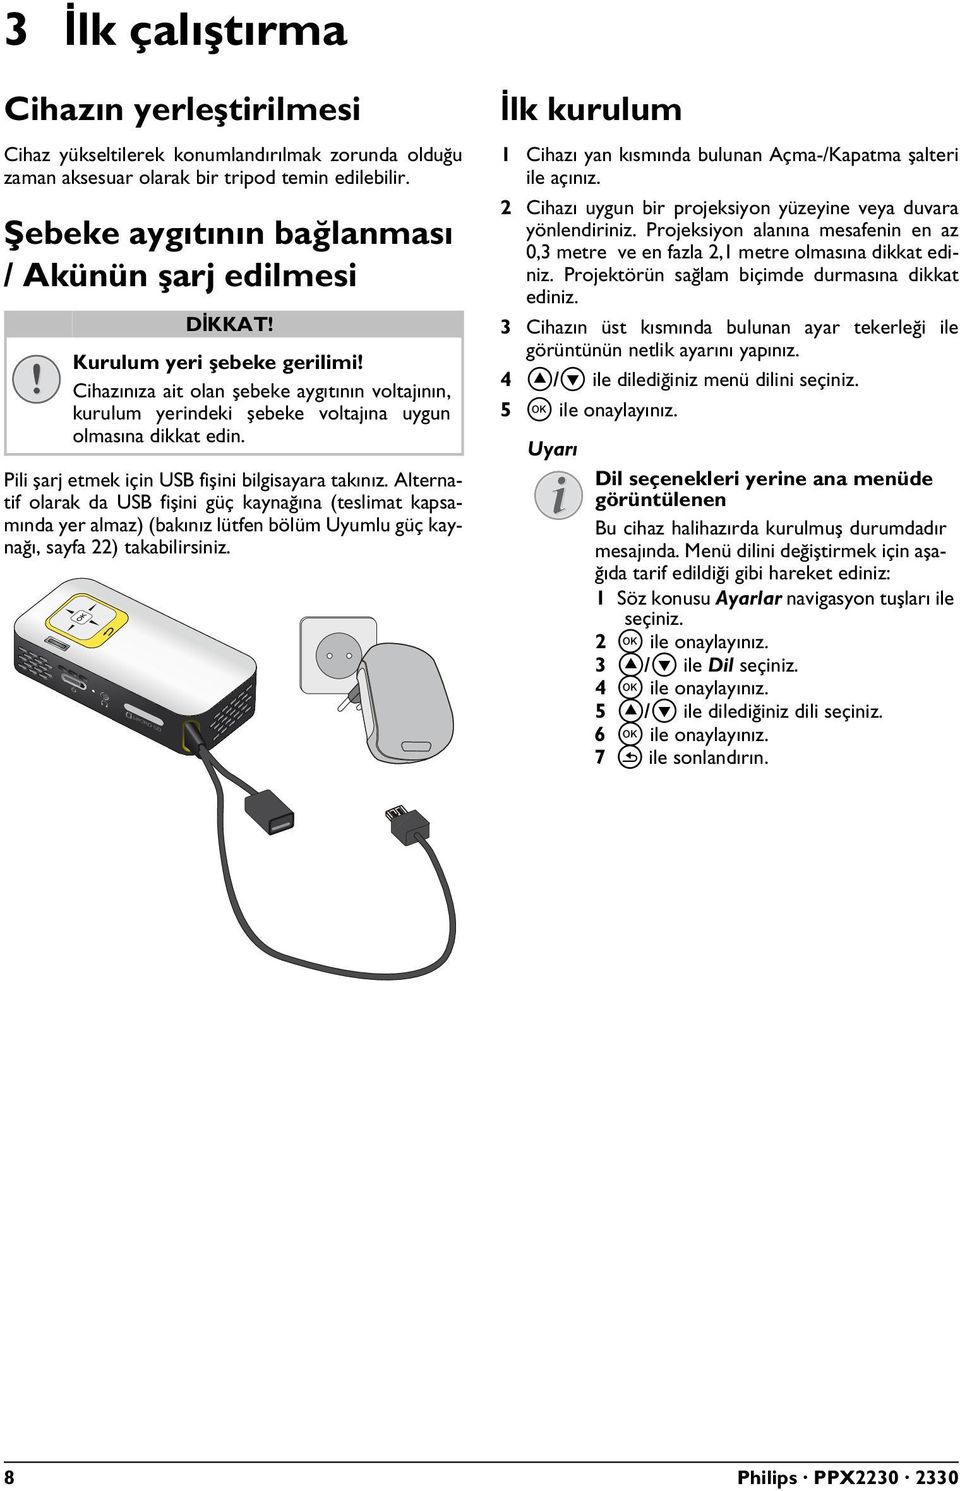 Pili şarj etmek için USB fişini bilgisayara takınız. Alternatif olarak da USB fişini güç kaynağına (teslimat kapsamında yer almaz) (bakınız lütfen bölüm Uyumlu güç kaynağı, sayfa 22) takabilirsiniz.